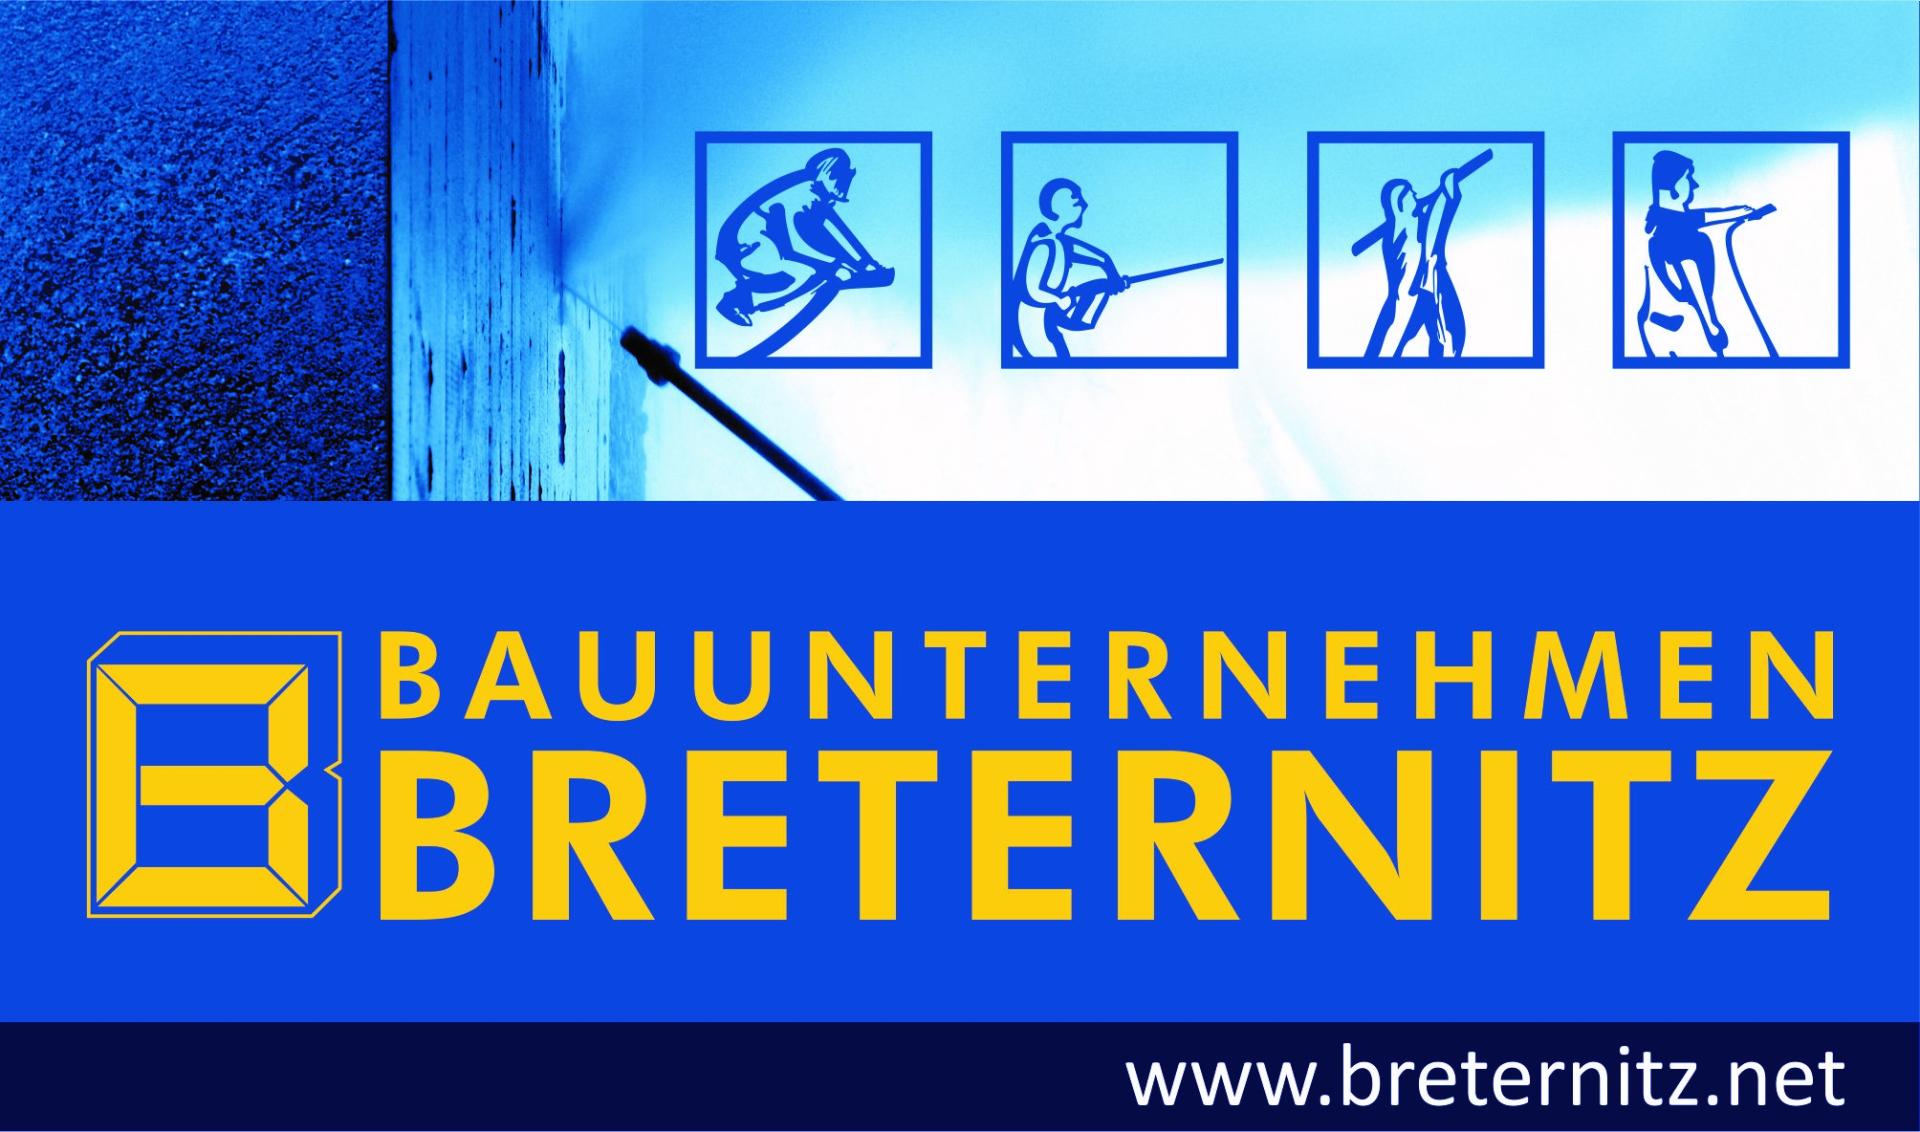 Breternitz